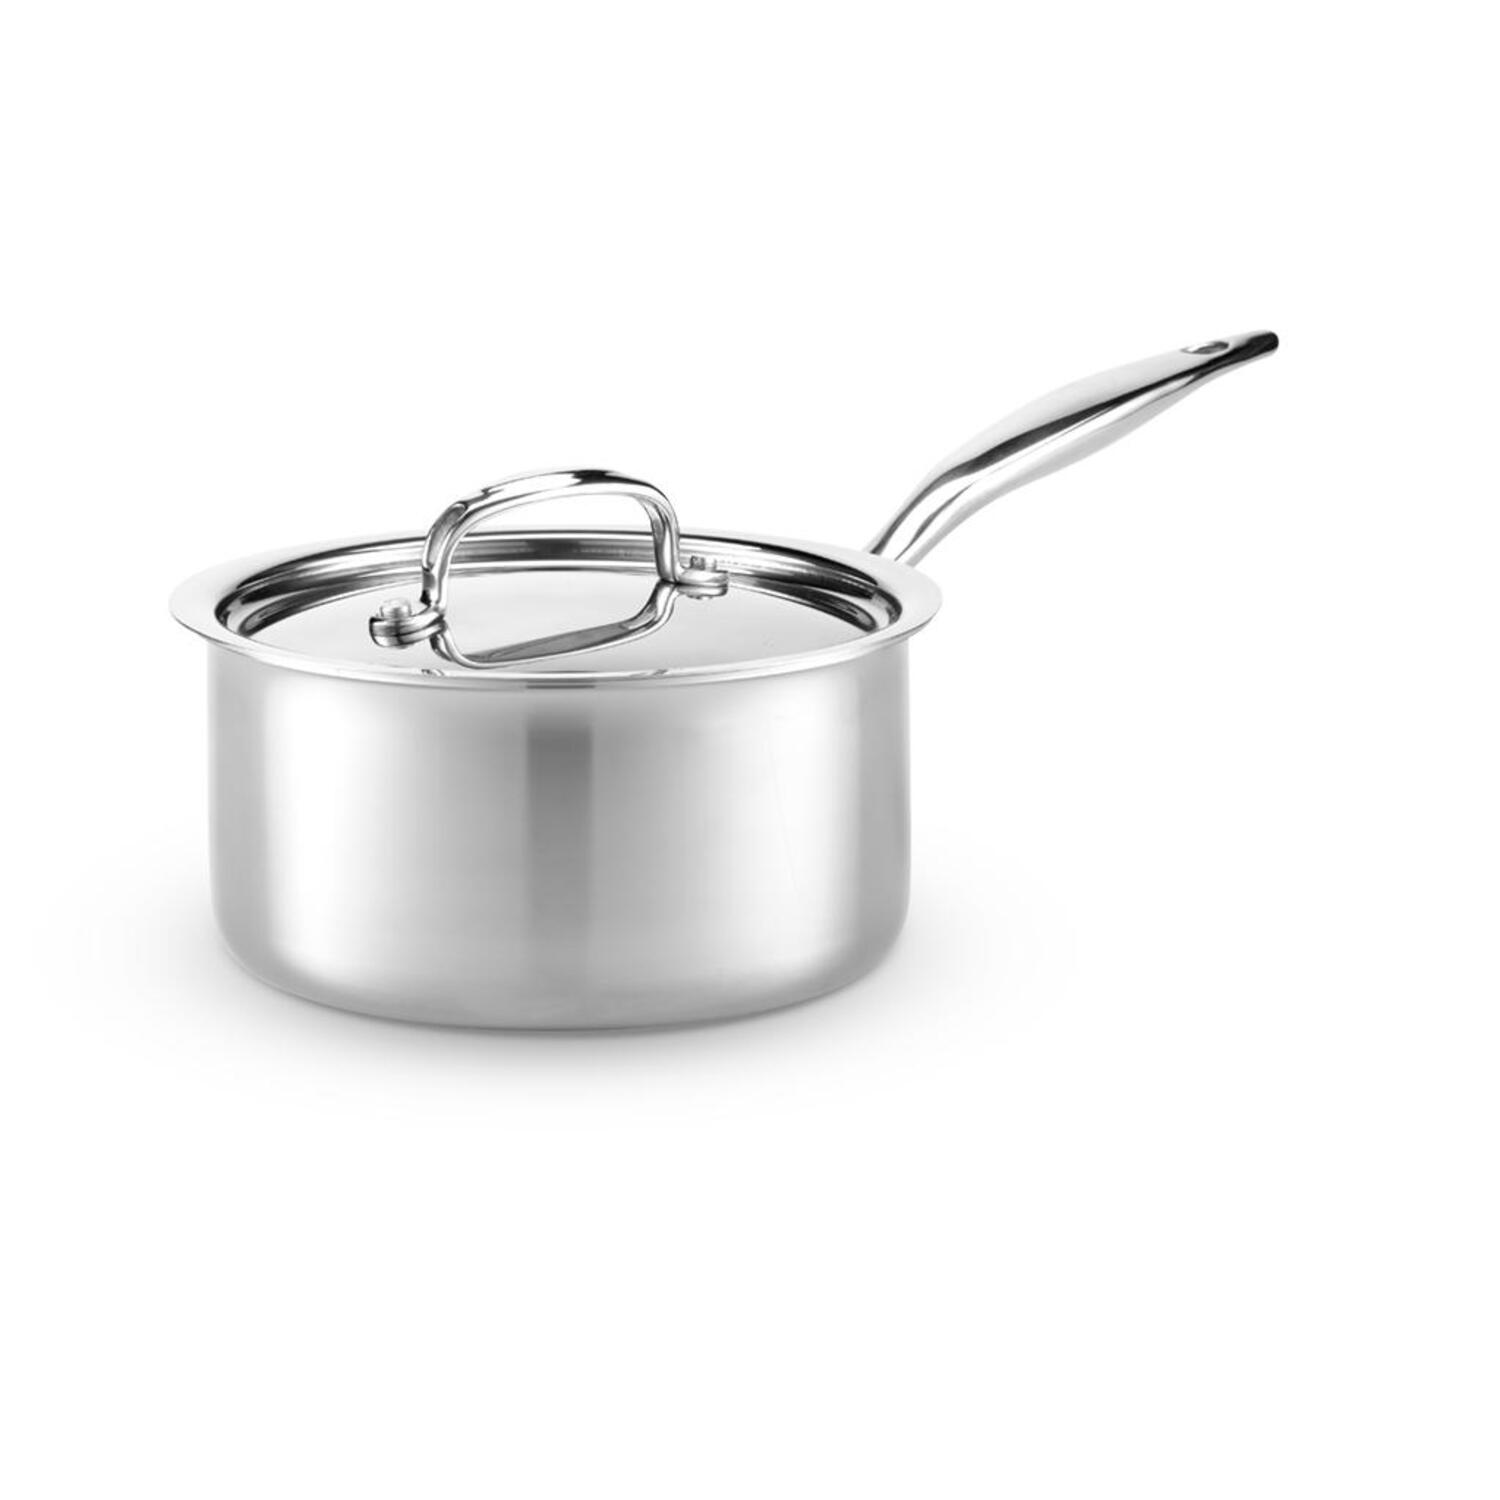 Family Style: 5 Piece Cookware Set - Essential Pots & Pans